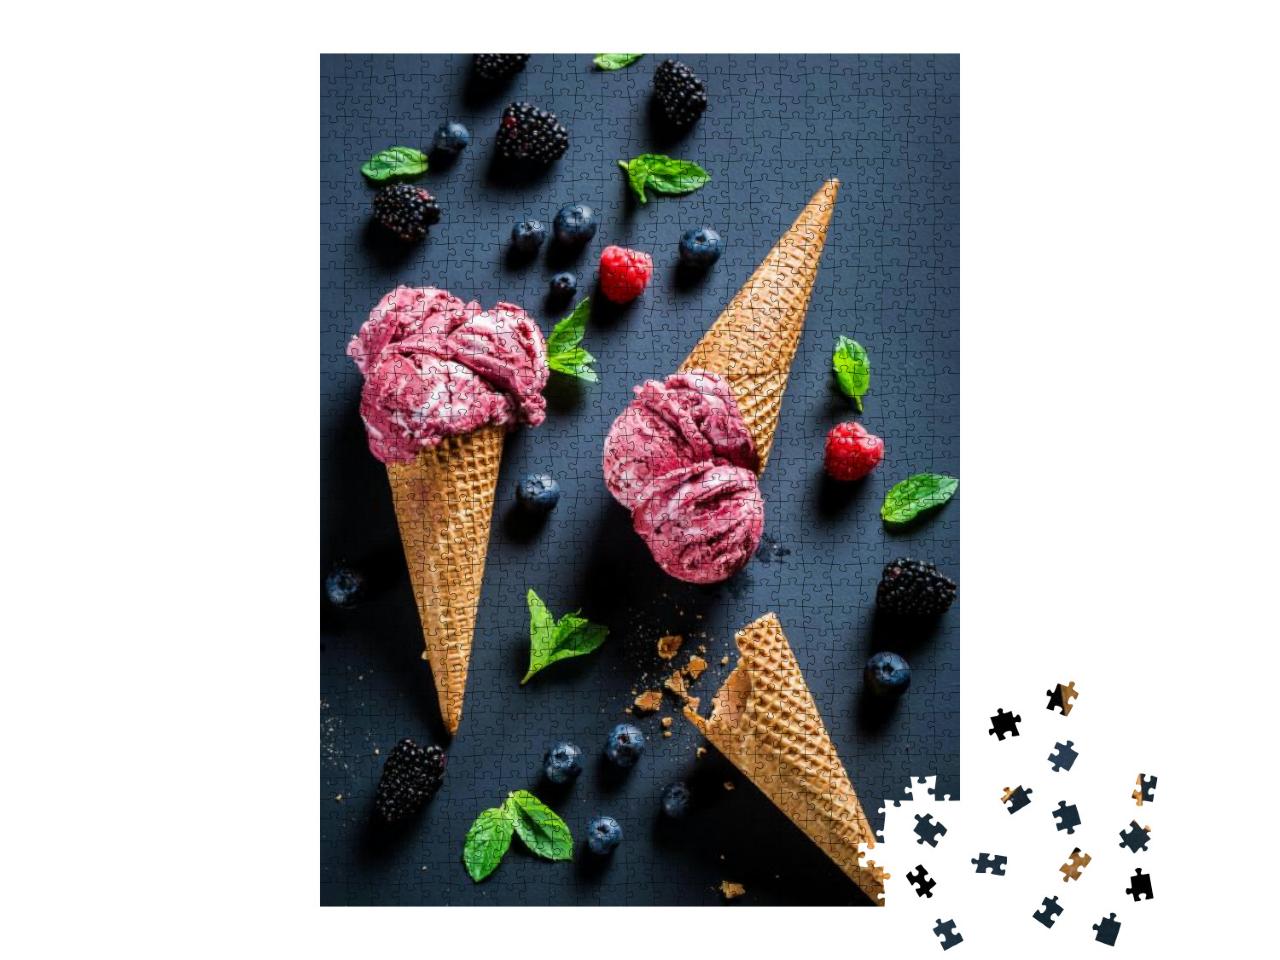 Puzzle 1000 Teile „Süßes Eis mit Beerenfrüchten und Minzblättern“